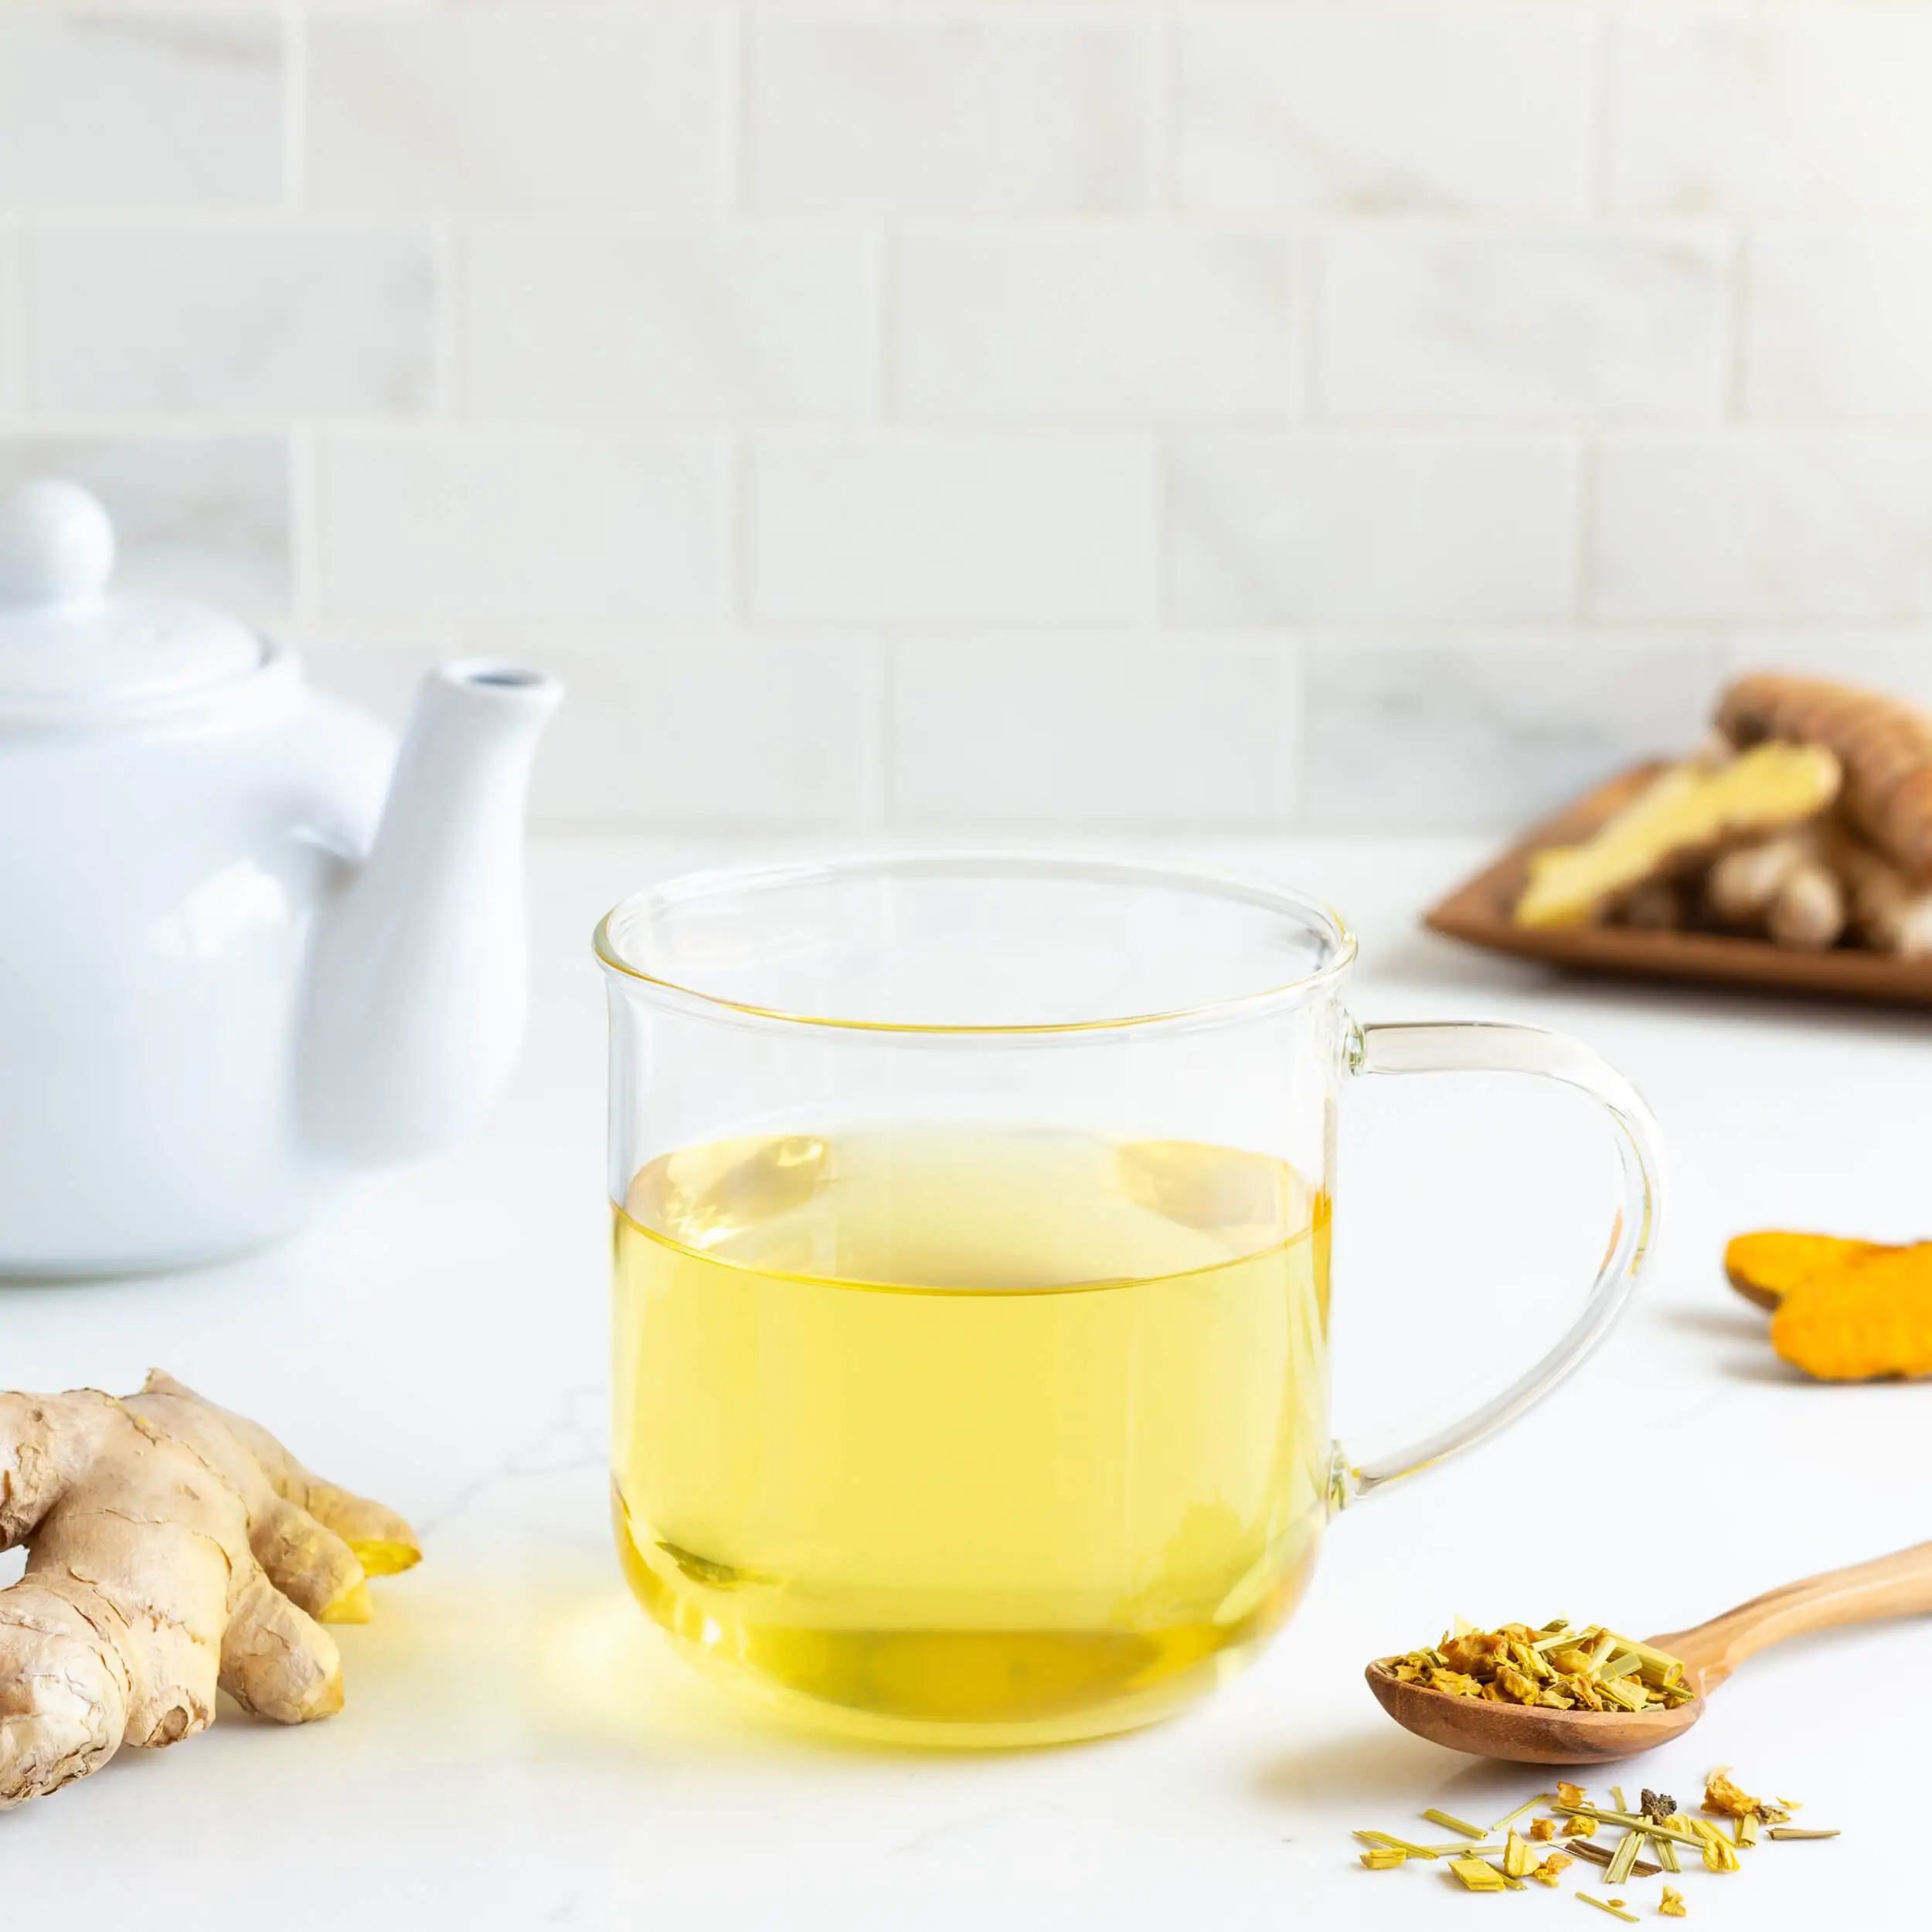 האיחוד האירופי סטנדרטי מוסמך סיני הרזיה תה בריא כורכום זנגביל לימון תה מיידי דבש ג 'ינג' ר תה